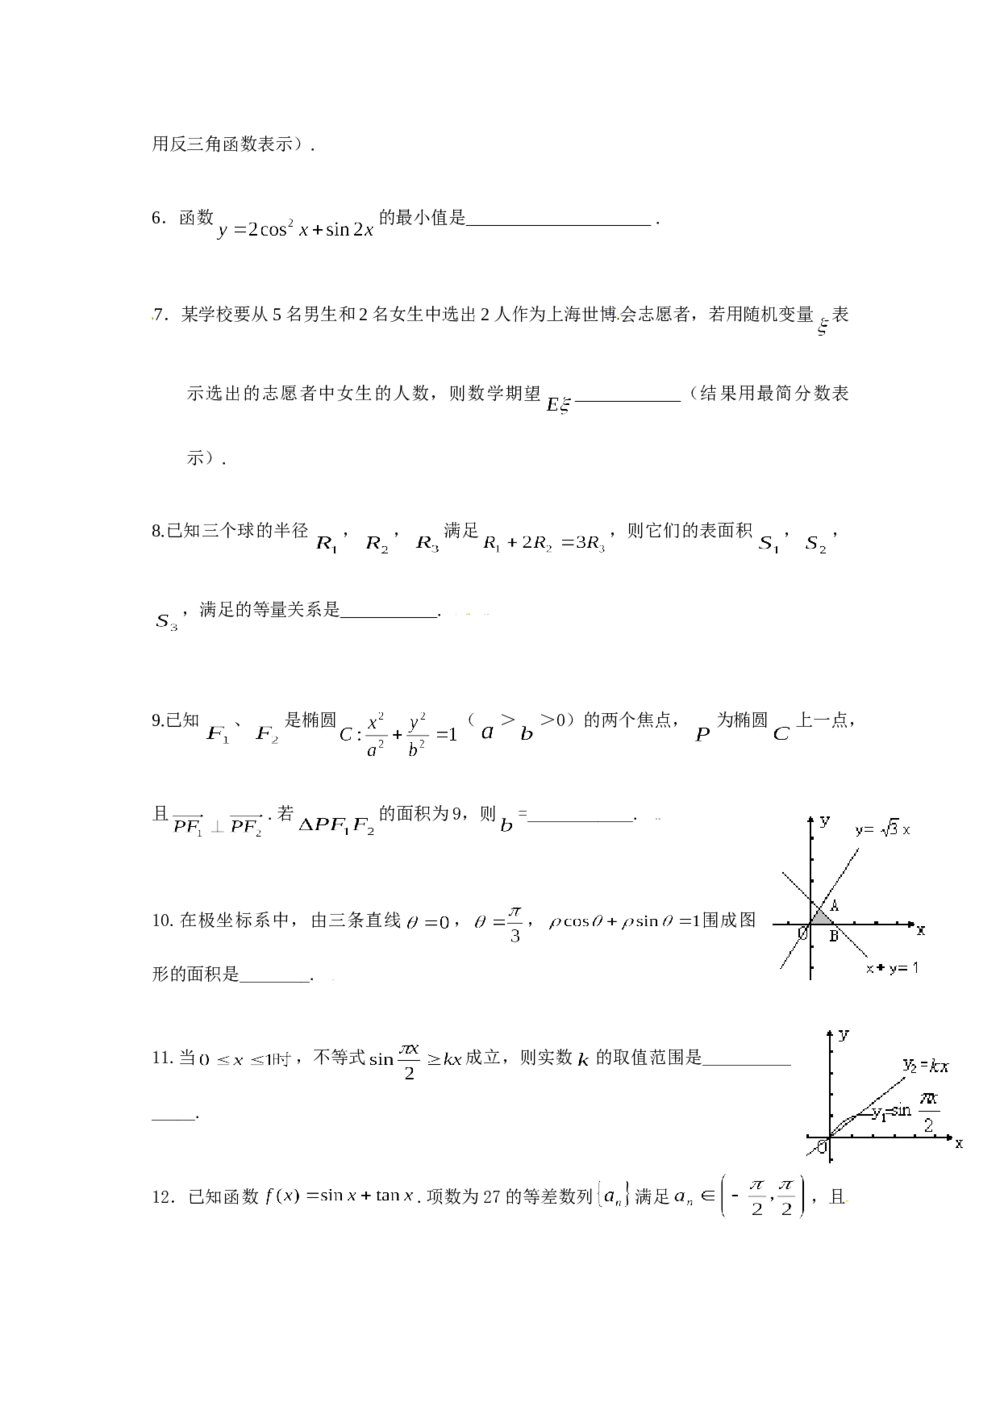 2009年上海高考数学试卷(理科)+(答案解析)2